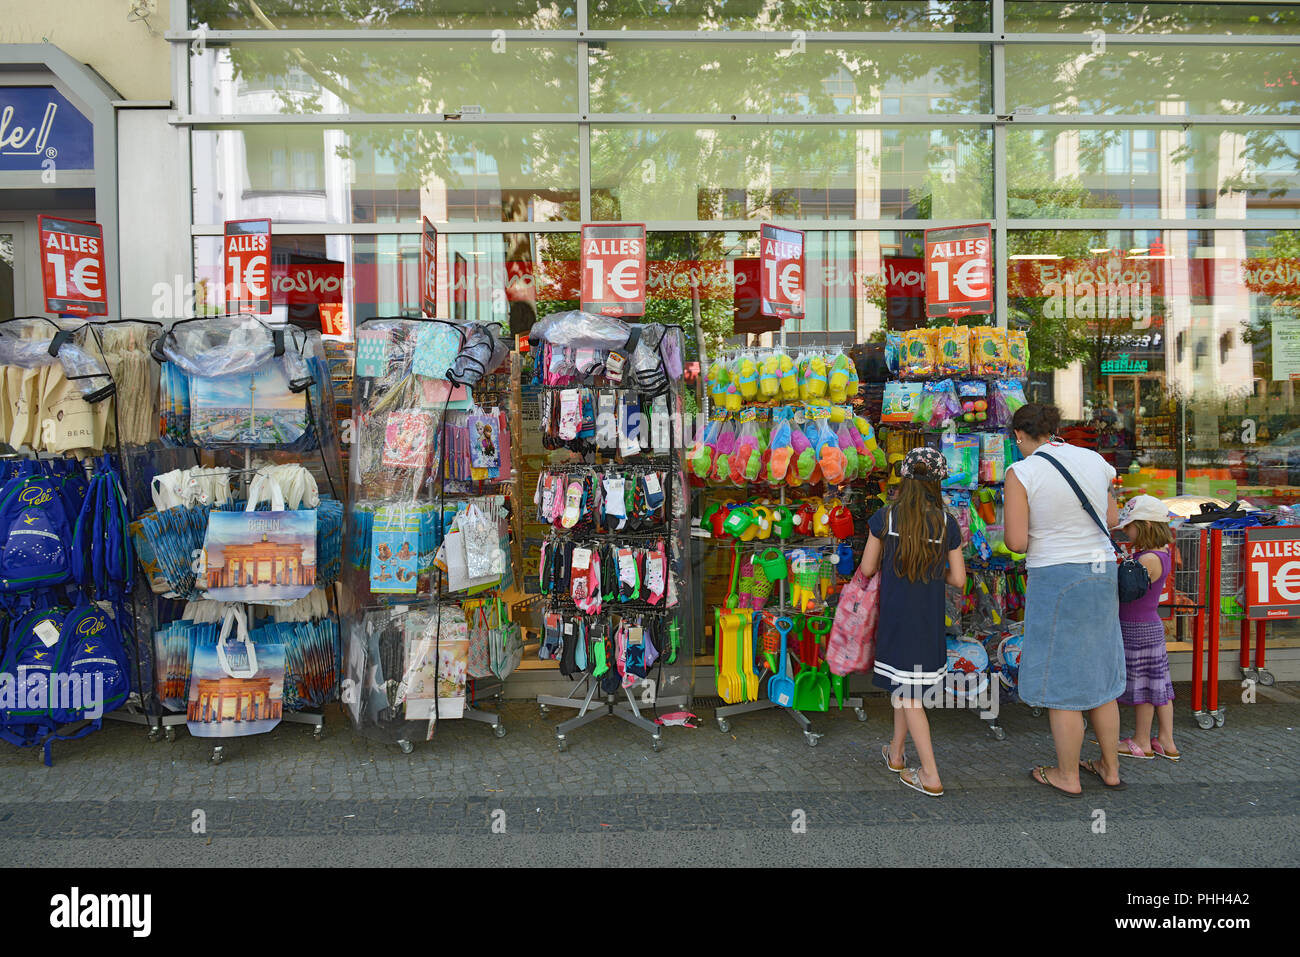 1-Euro-Shop, Schlossstrasse, Steglitz, Berlin, Deutschland Stock Photo